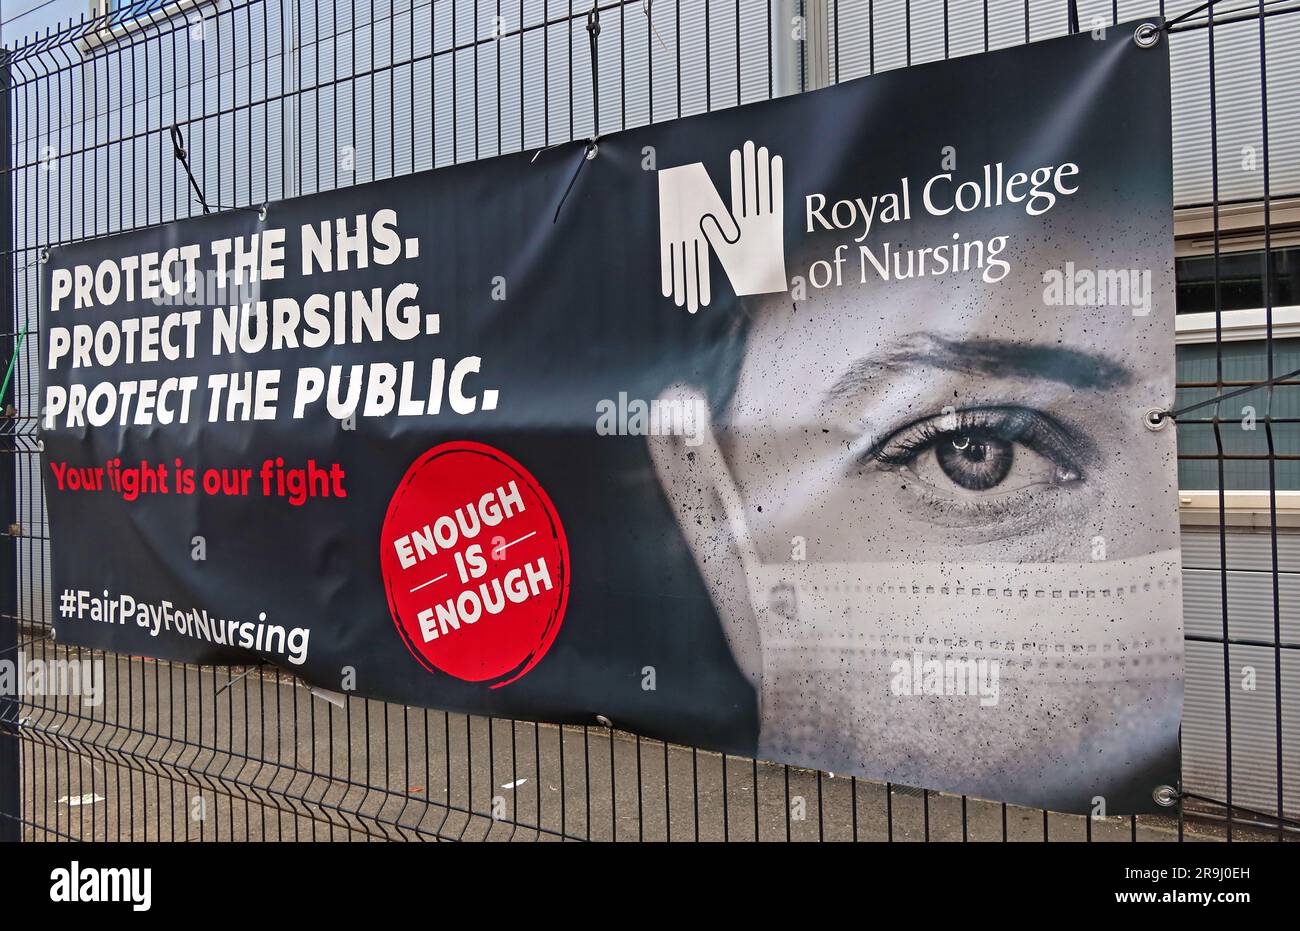 Banner RCN su una recinzione al Mater infirmorum Belfast, Royal College of Nursing dire proteggere il NHS, l'infermieristica e il pubblico, #FairPayForNursing Foto Stock